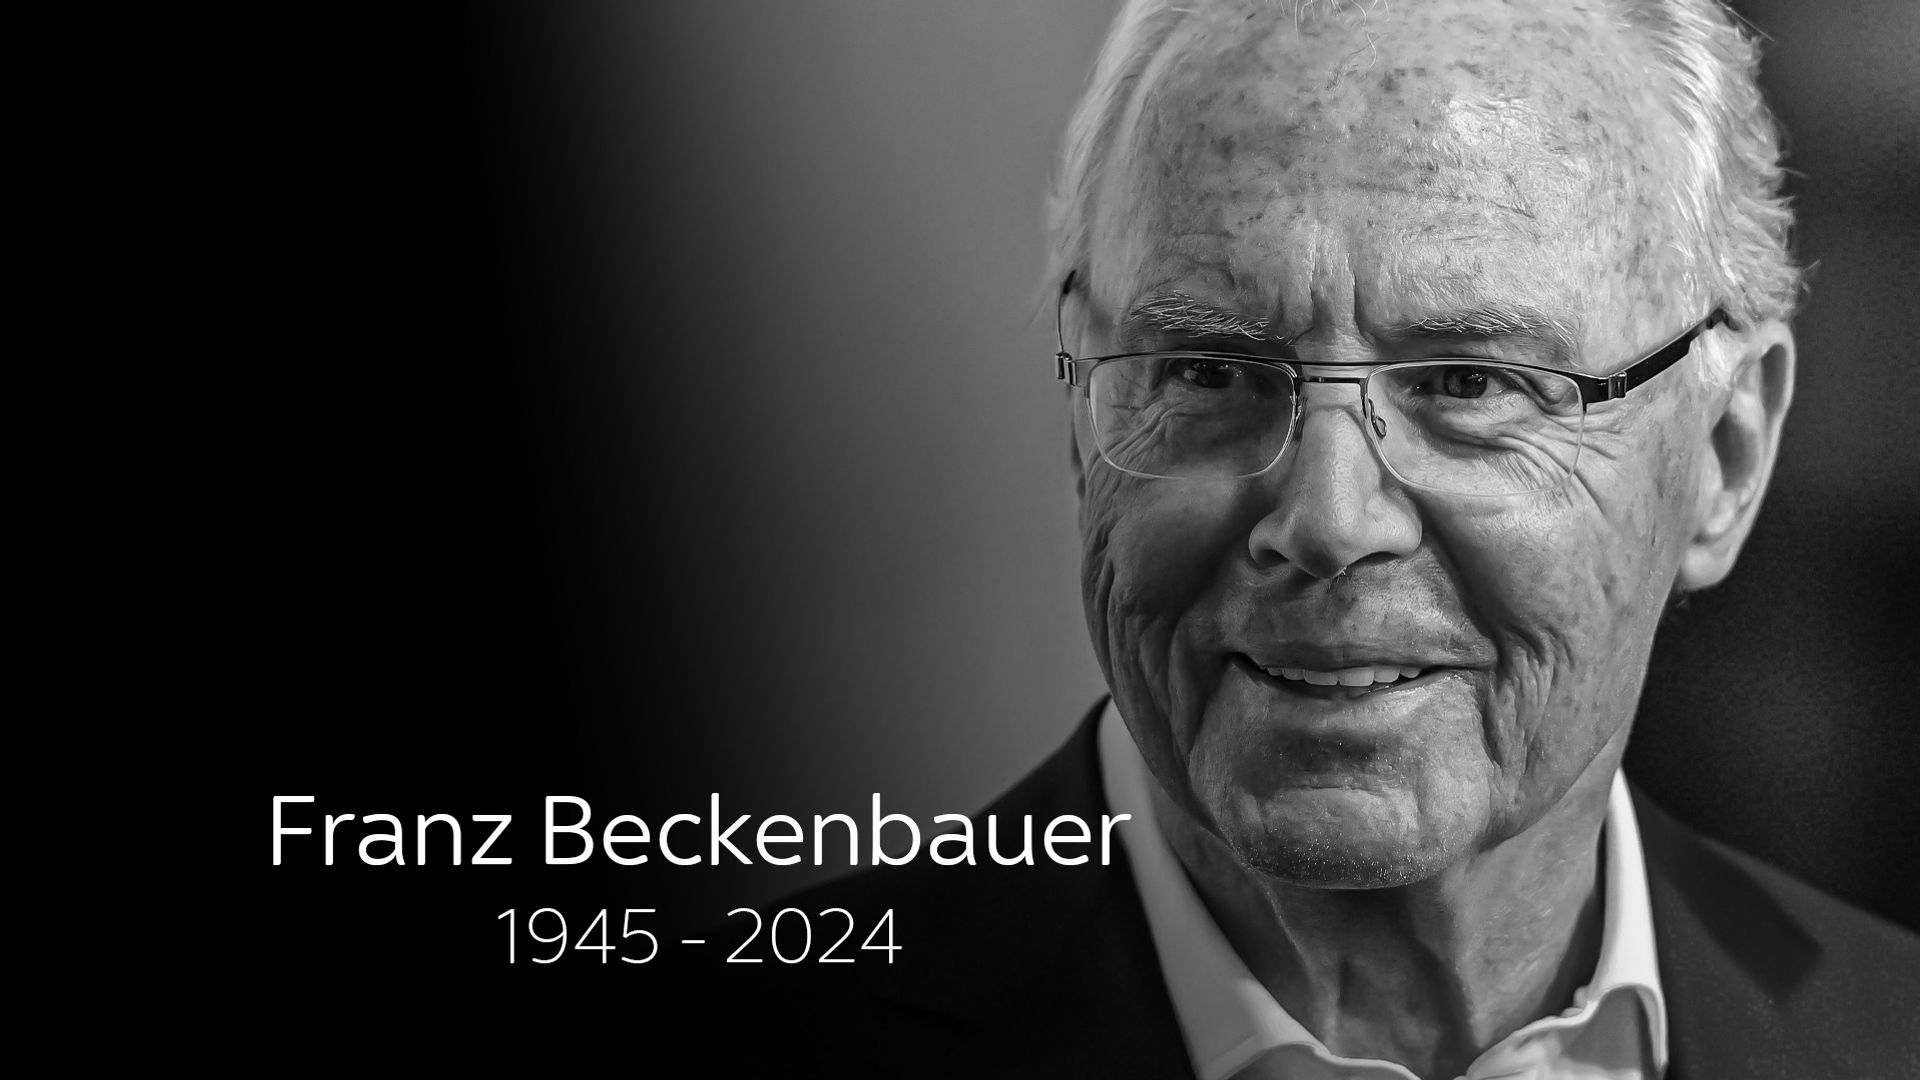 Football legend Beckenbauer dies aged 78